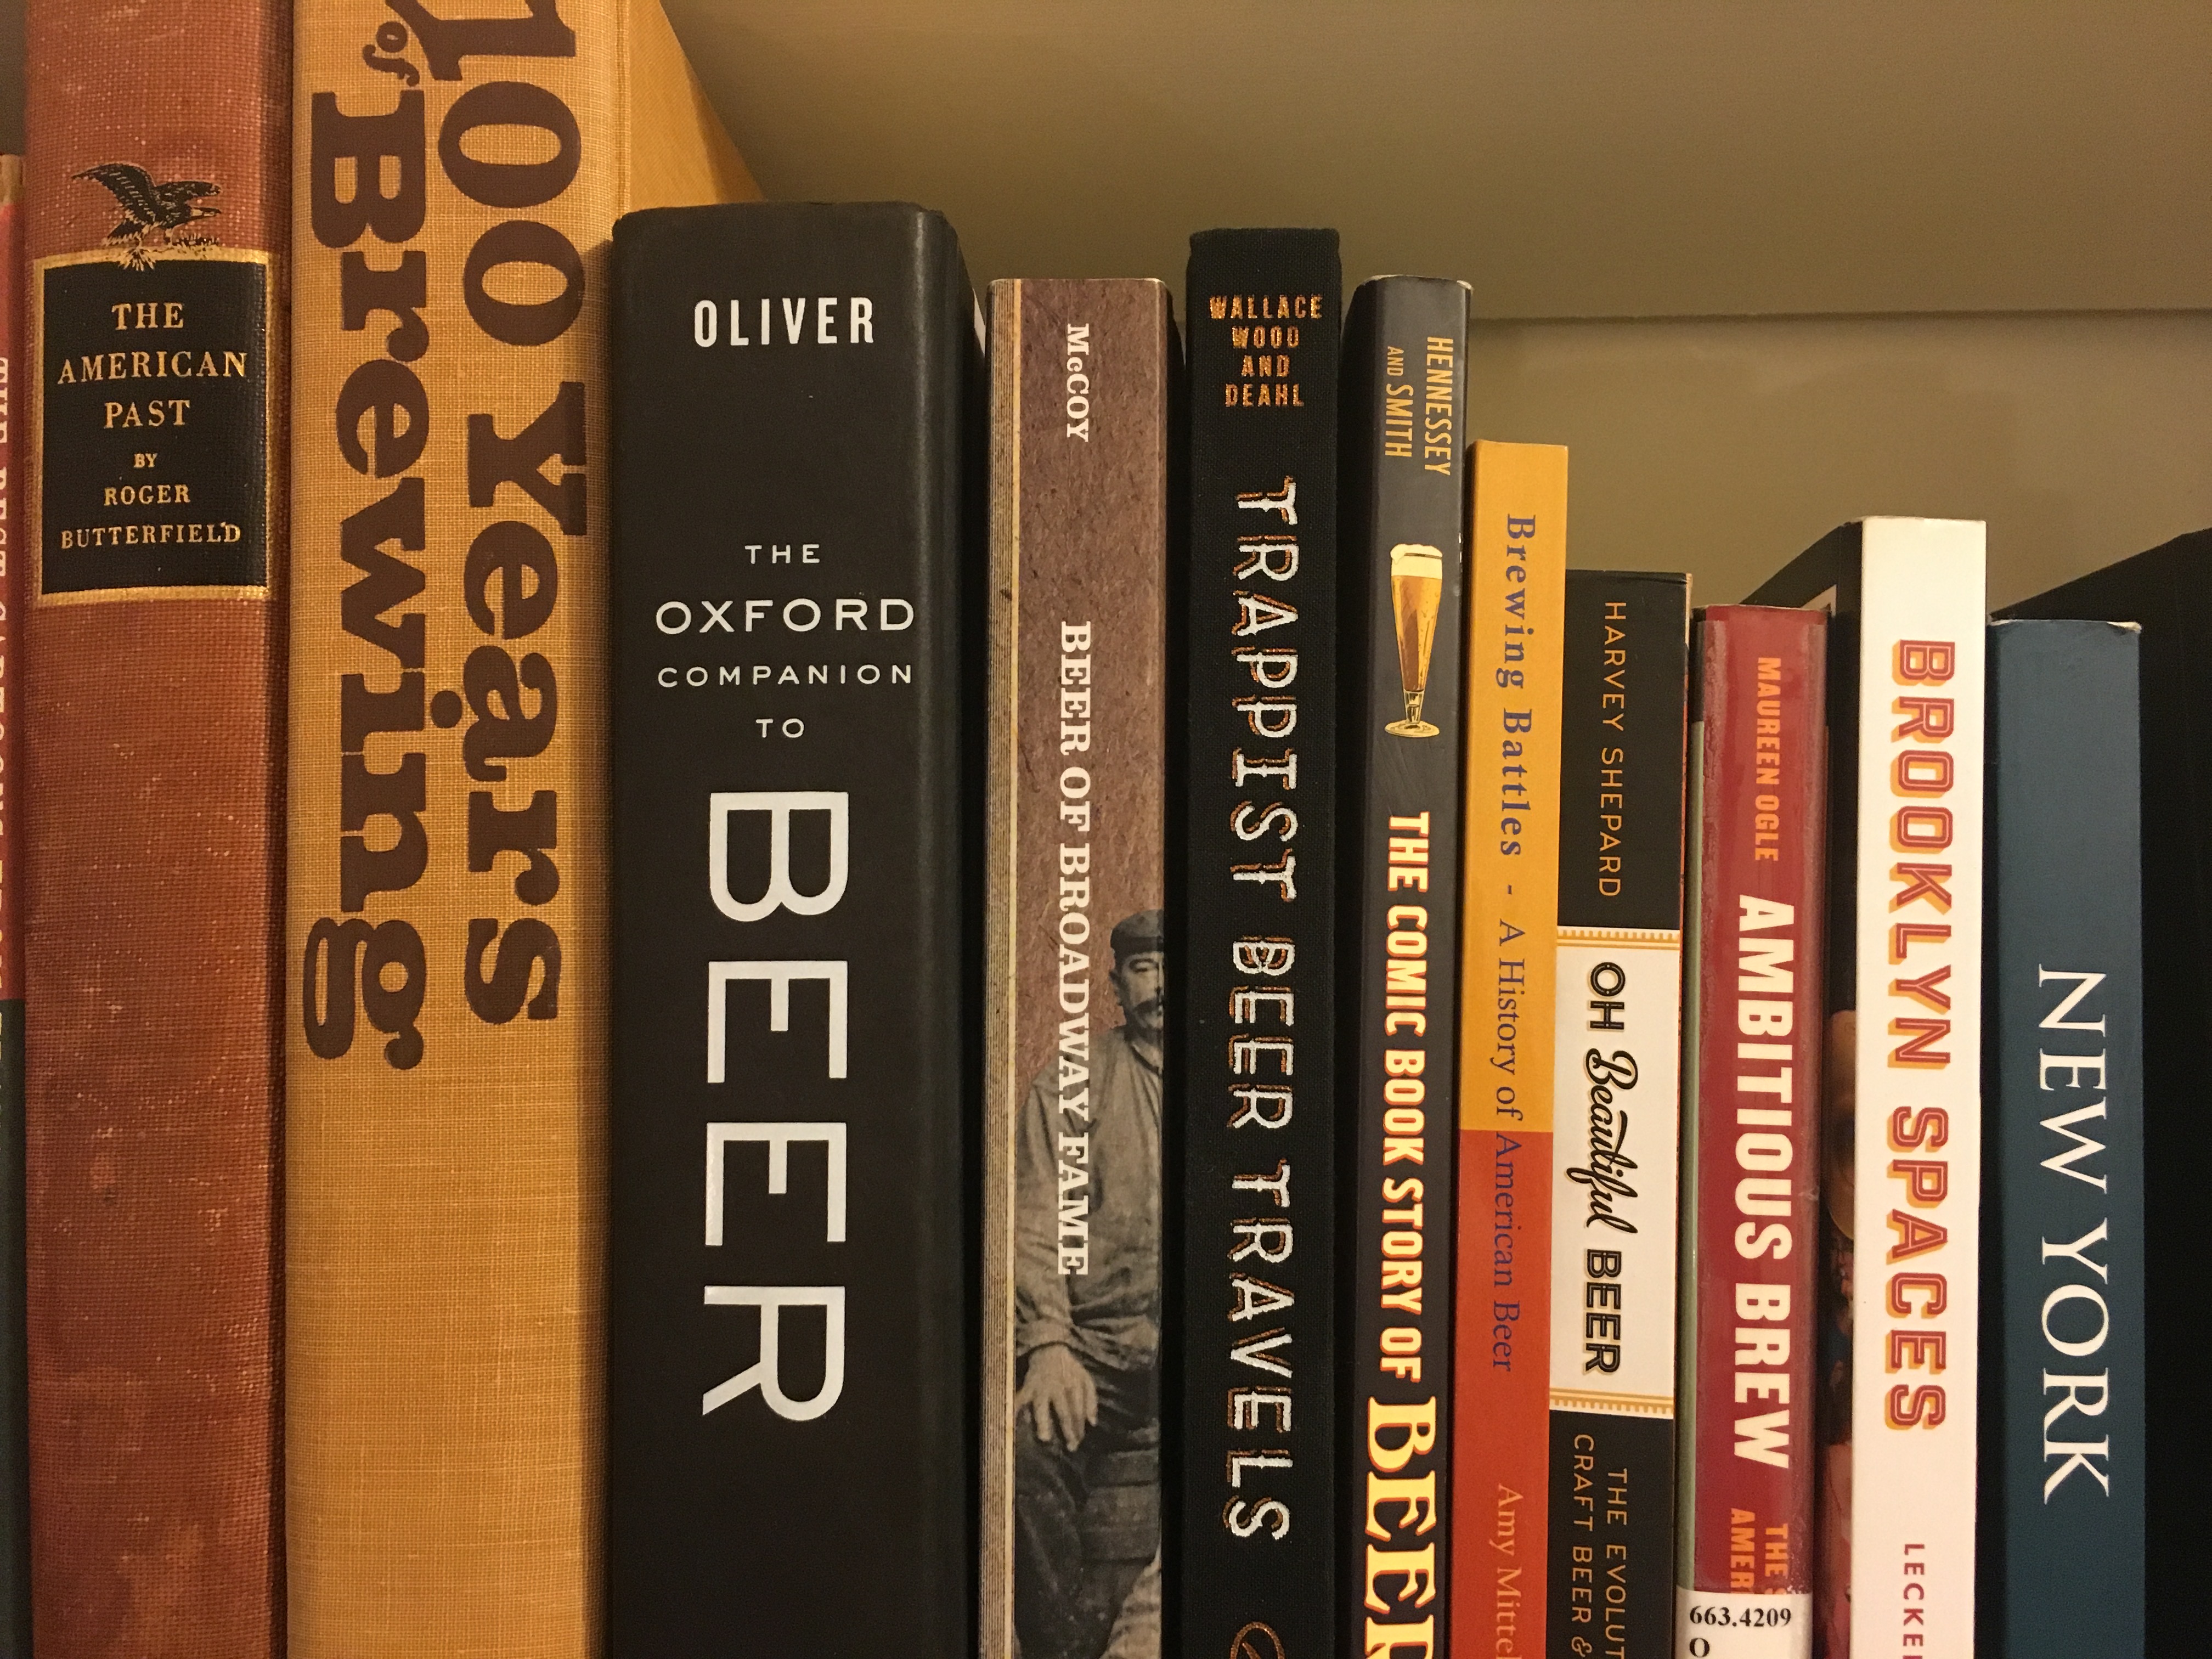 beer book spines on shelf